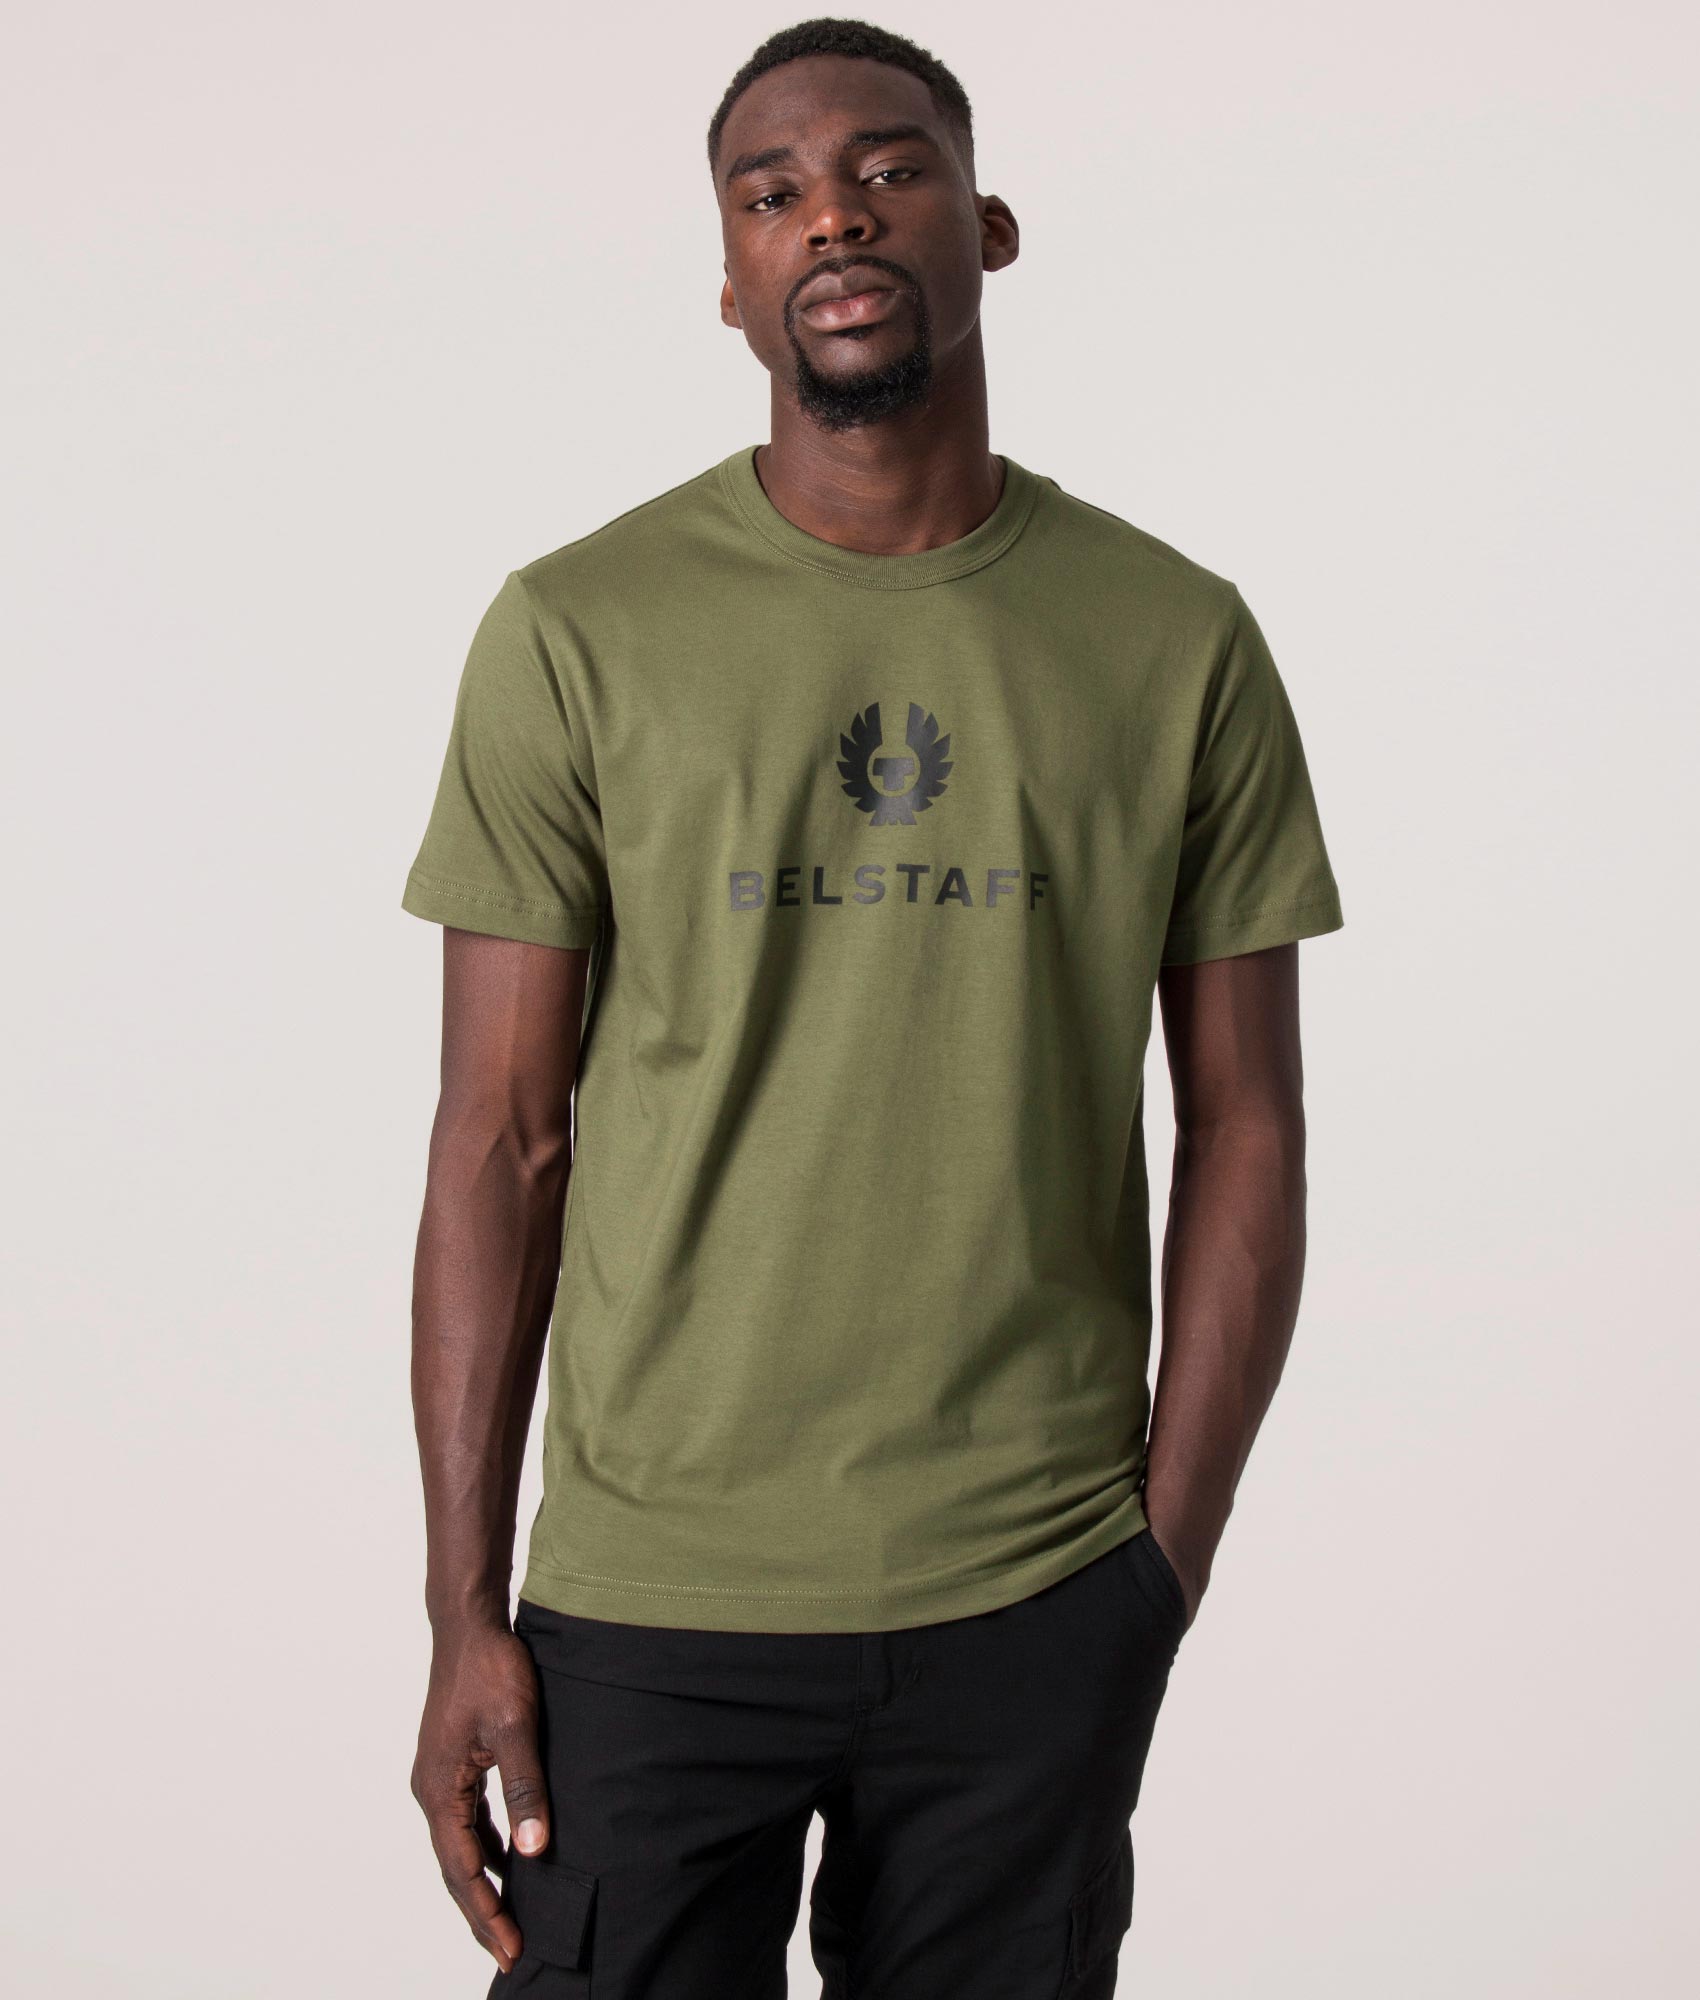 Belstaff Mens Belstaff Signature T-Shirt - Colour: True Olive - Size: Medium